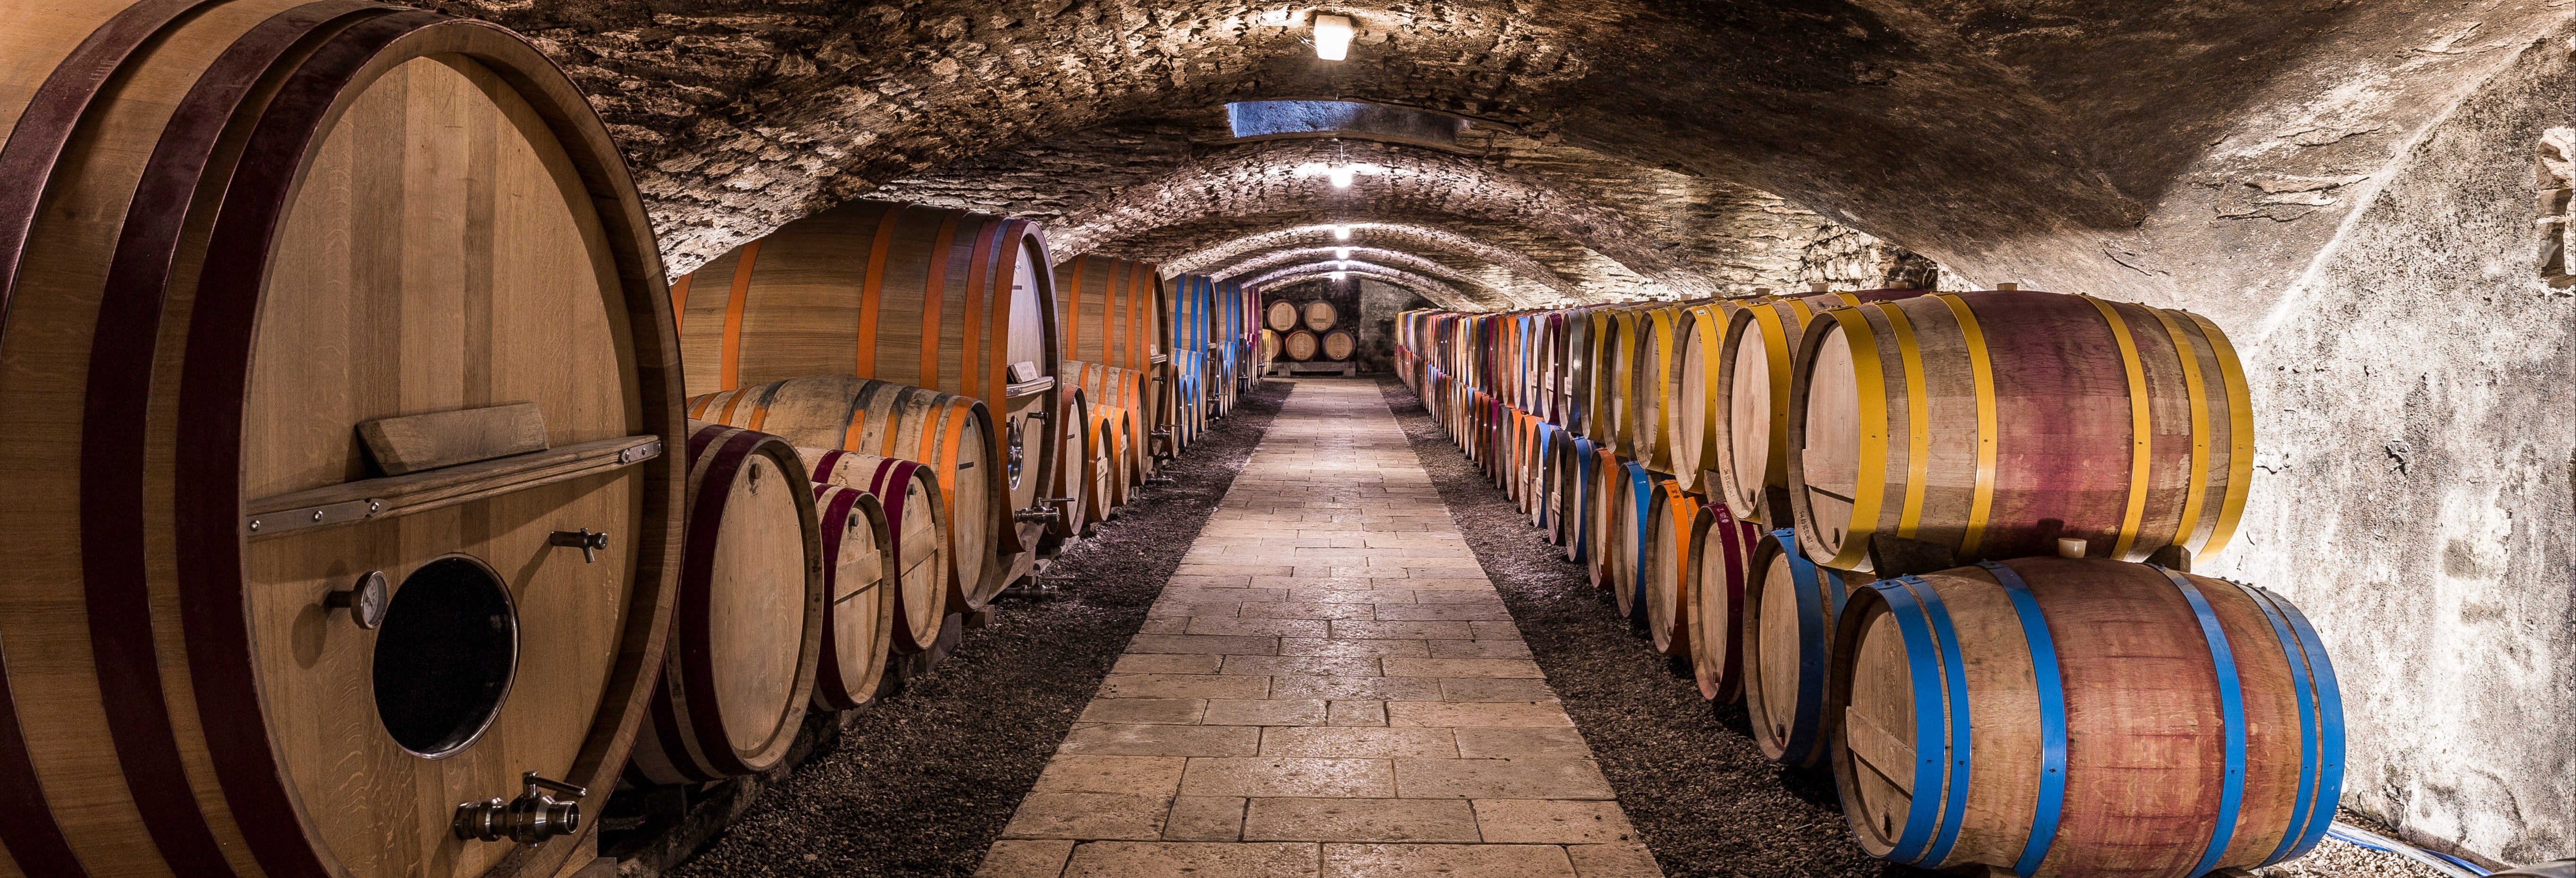 Visite des vignobles et des caves à vin